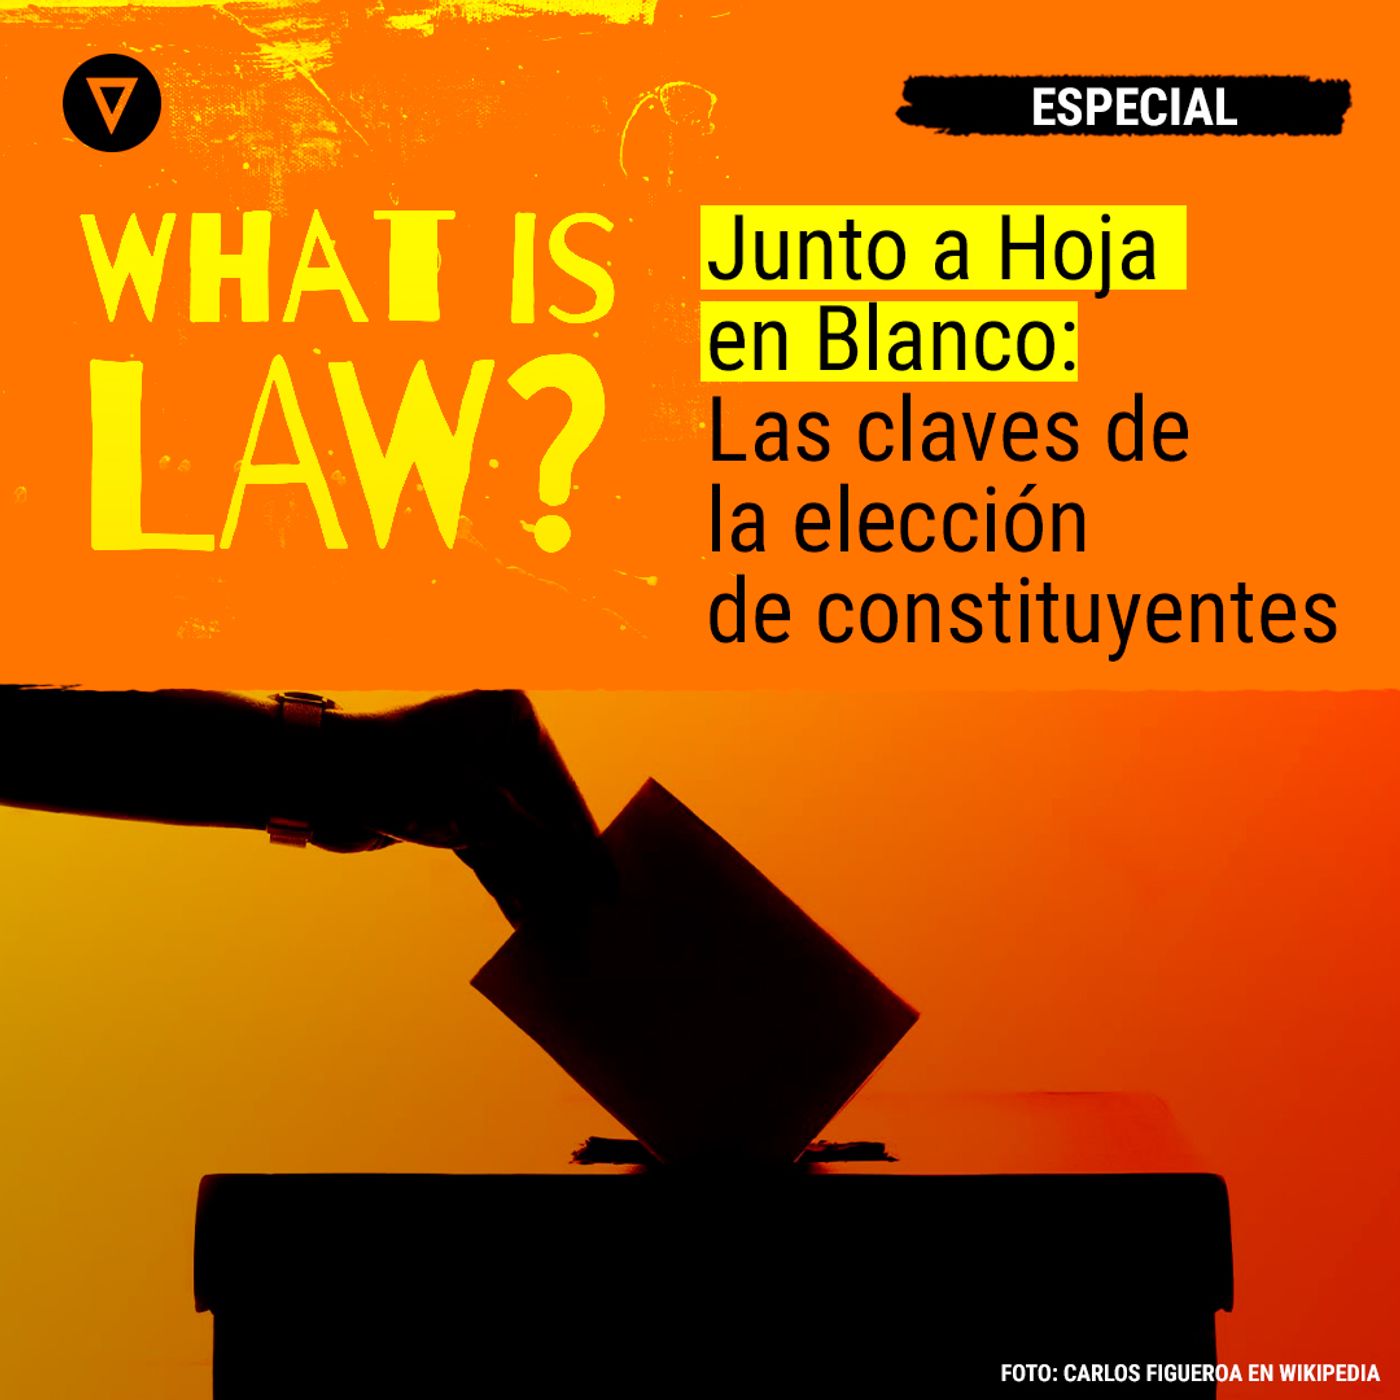 ESPECIAL:  WHAT IS LAW y HOJA EN BLANCO - Parte 1